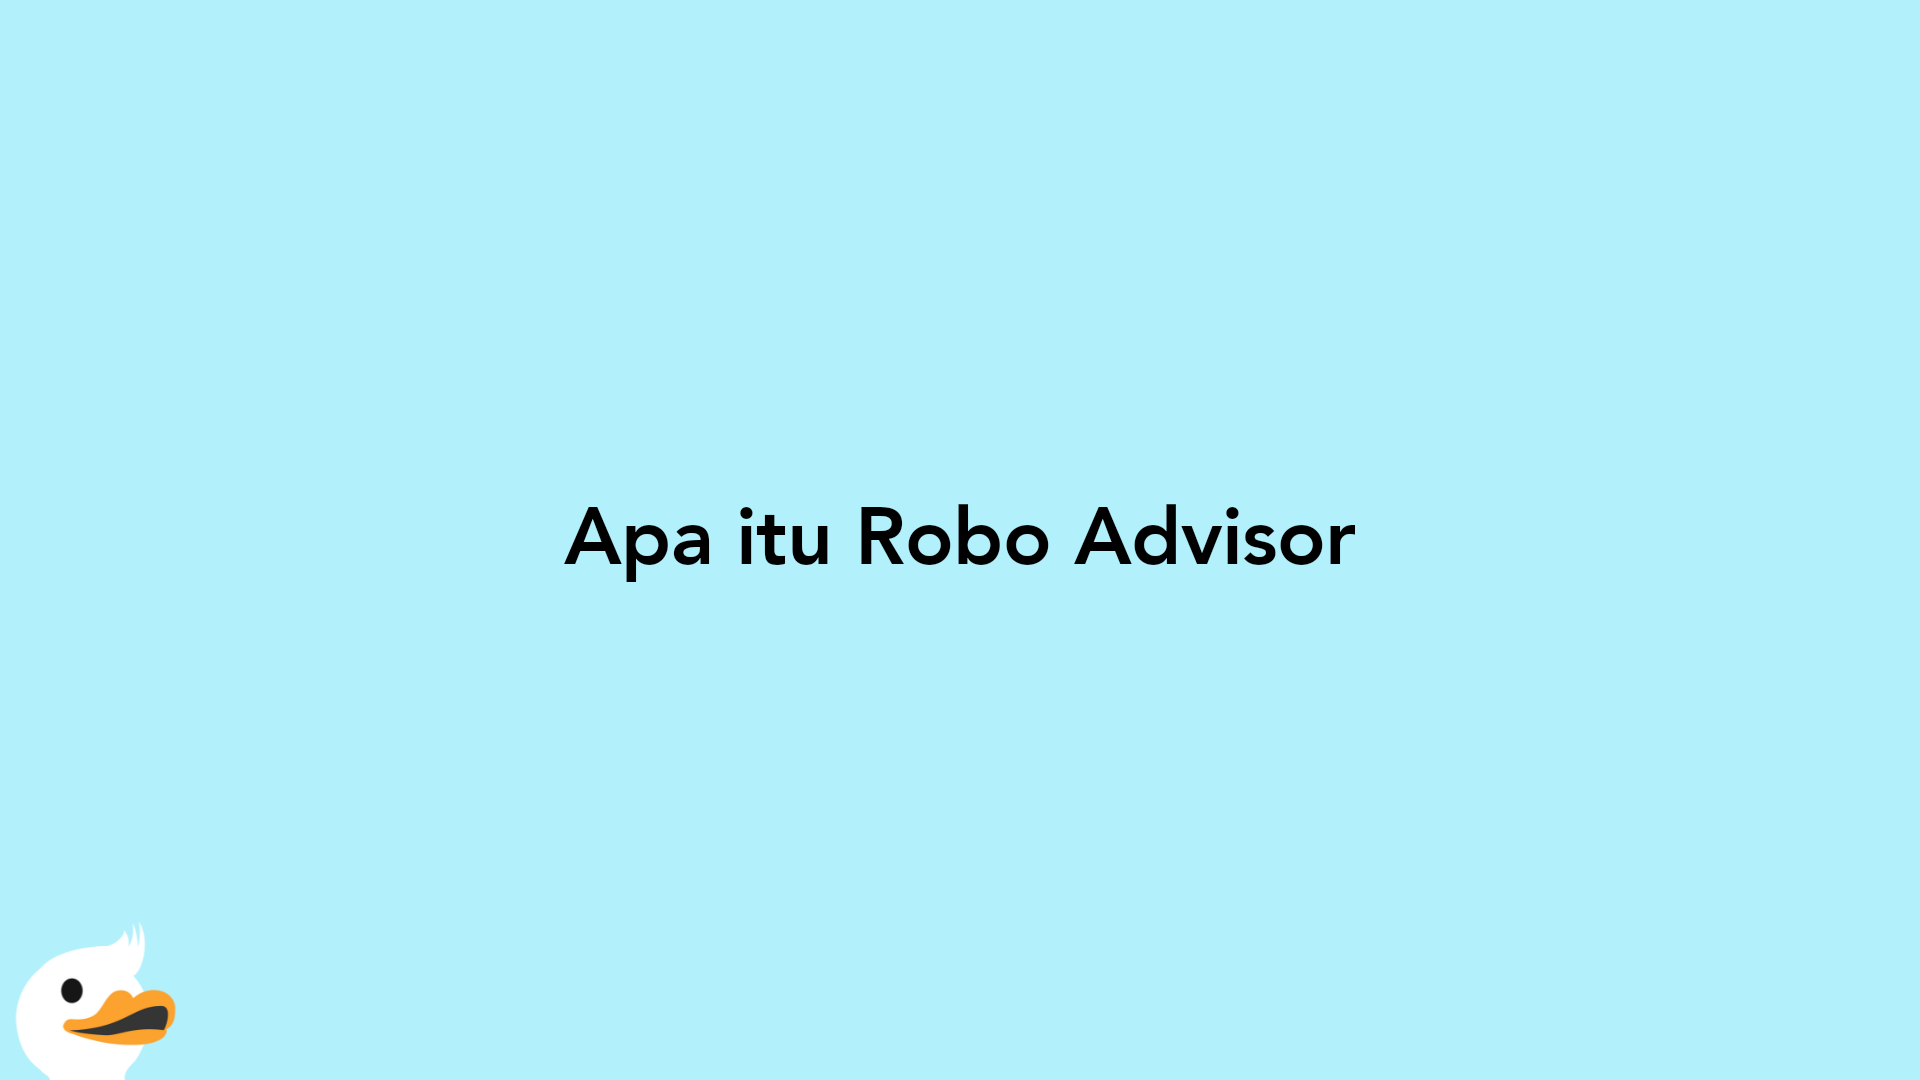 Apa itu Robo Advisor